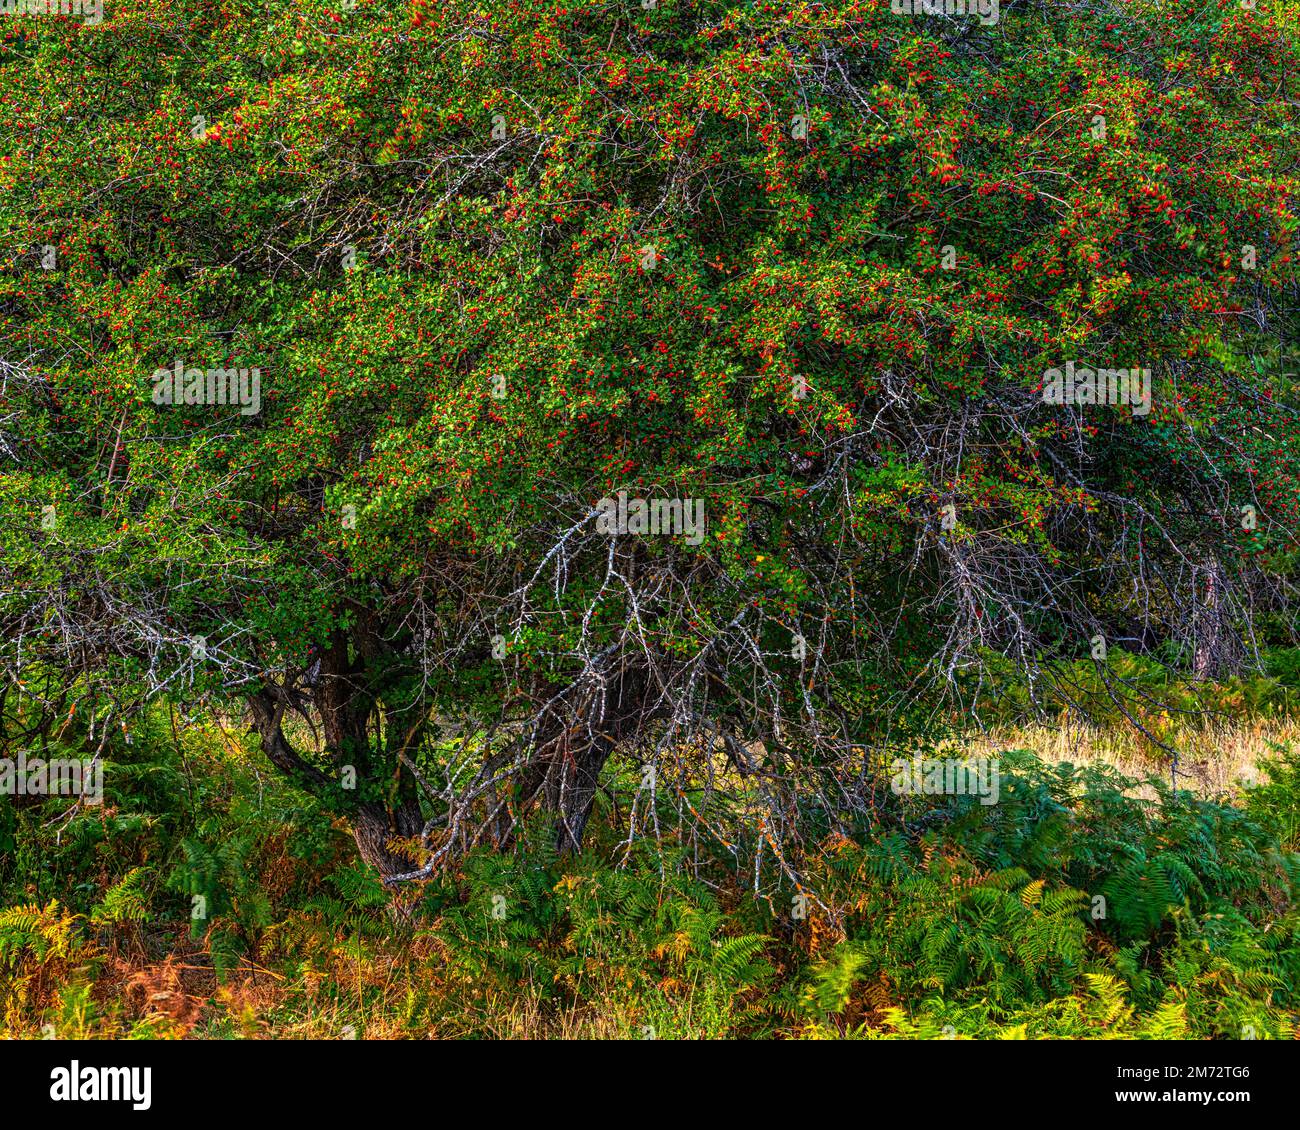 Il biancospino, Crataegus monogyna Jacq., è un arbusto o, o piccolo albero torbido e spinoso, appartenente alla famiglia delle Rosaceae e del genere Crataegus. Abruzzo Foto Stock